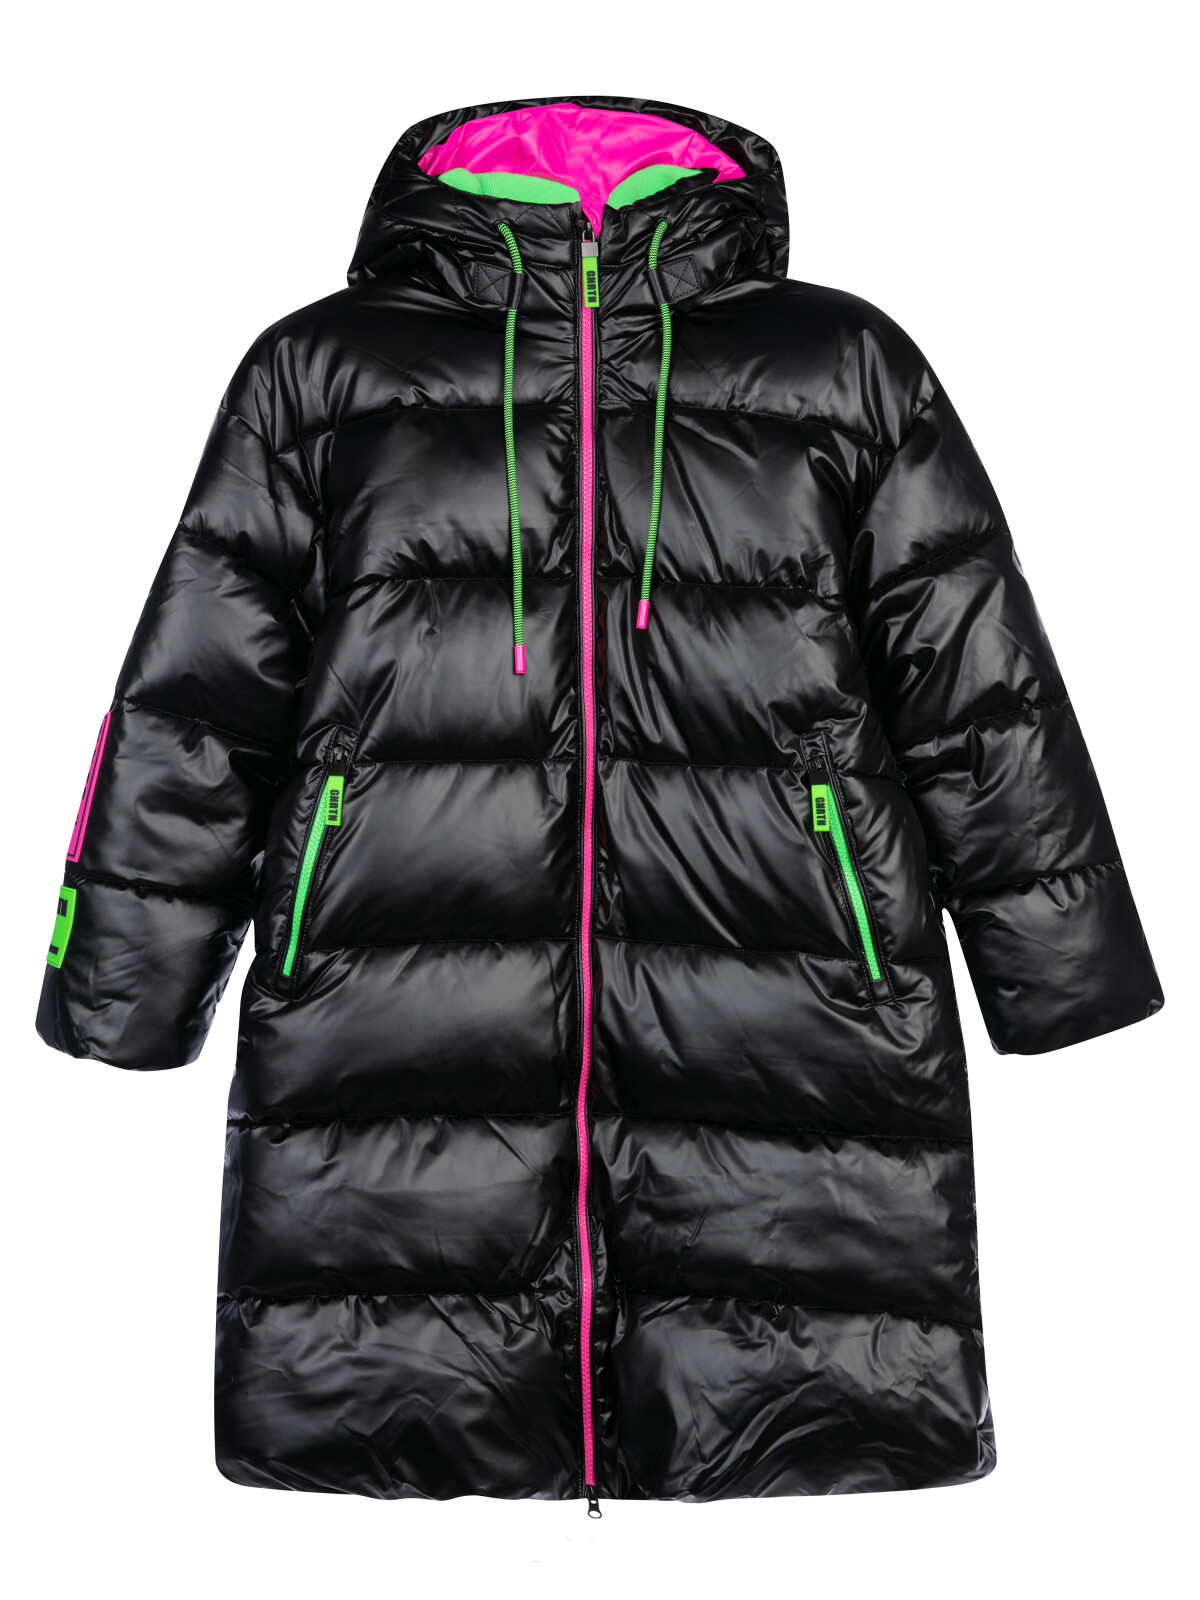 Пальто текстильное с полиуретановым покрытием для девочек PlayToday, черный,цветной, 128